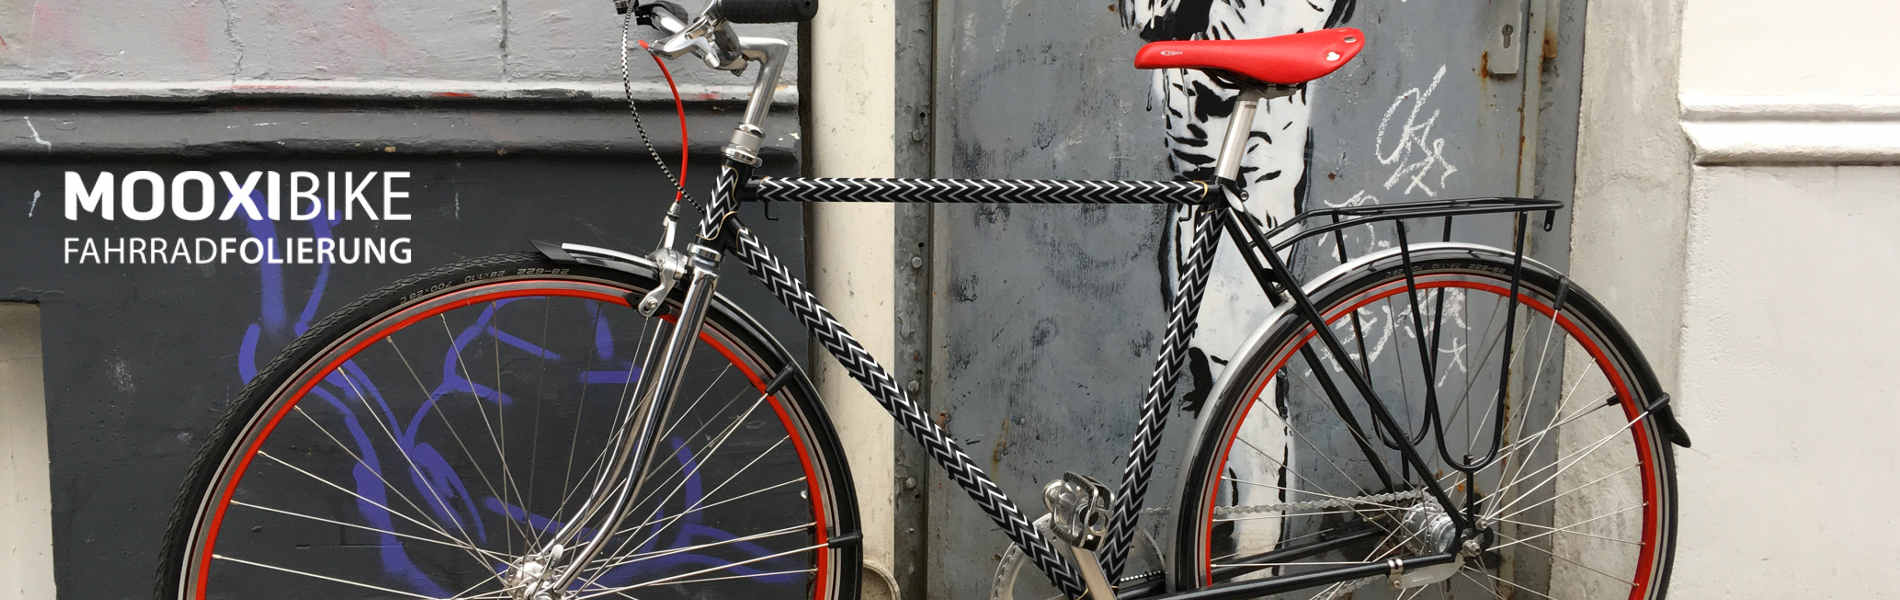 MOOXIBIKE - Fahrradfolie / Bike wrapping